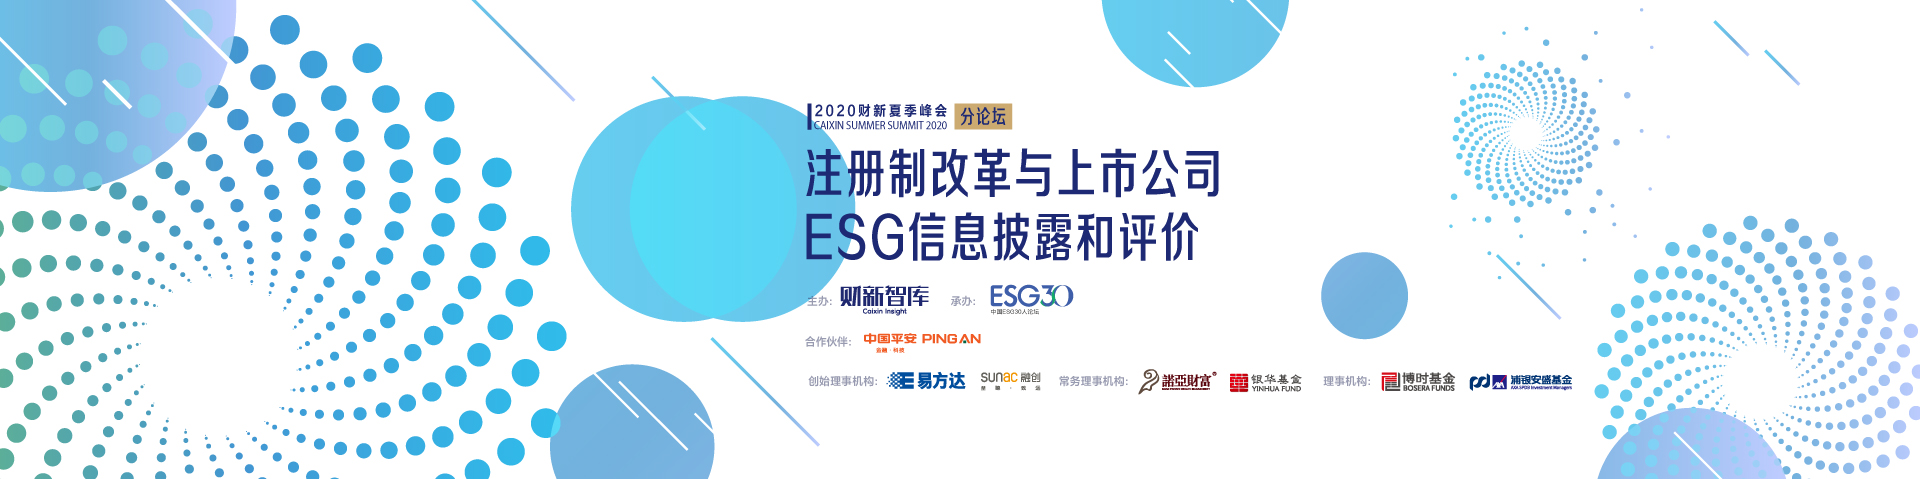 ESG2020夏季峰会